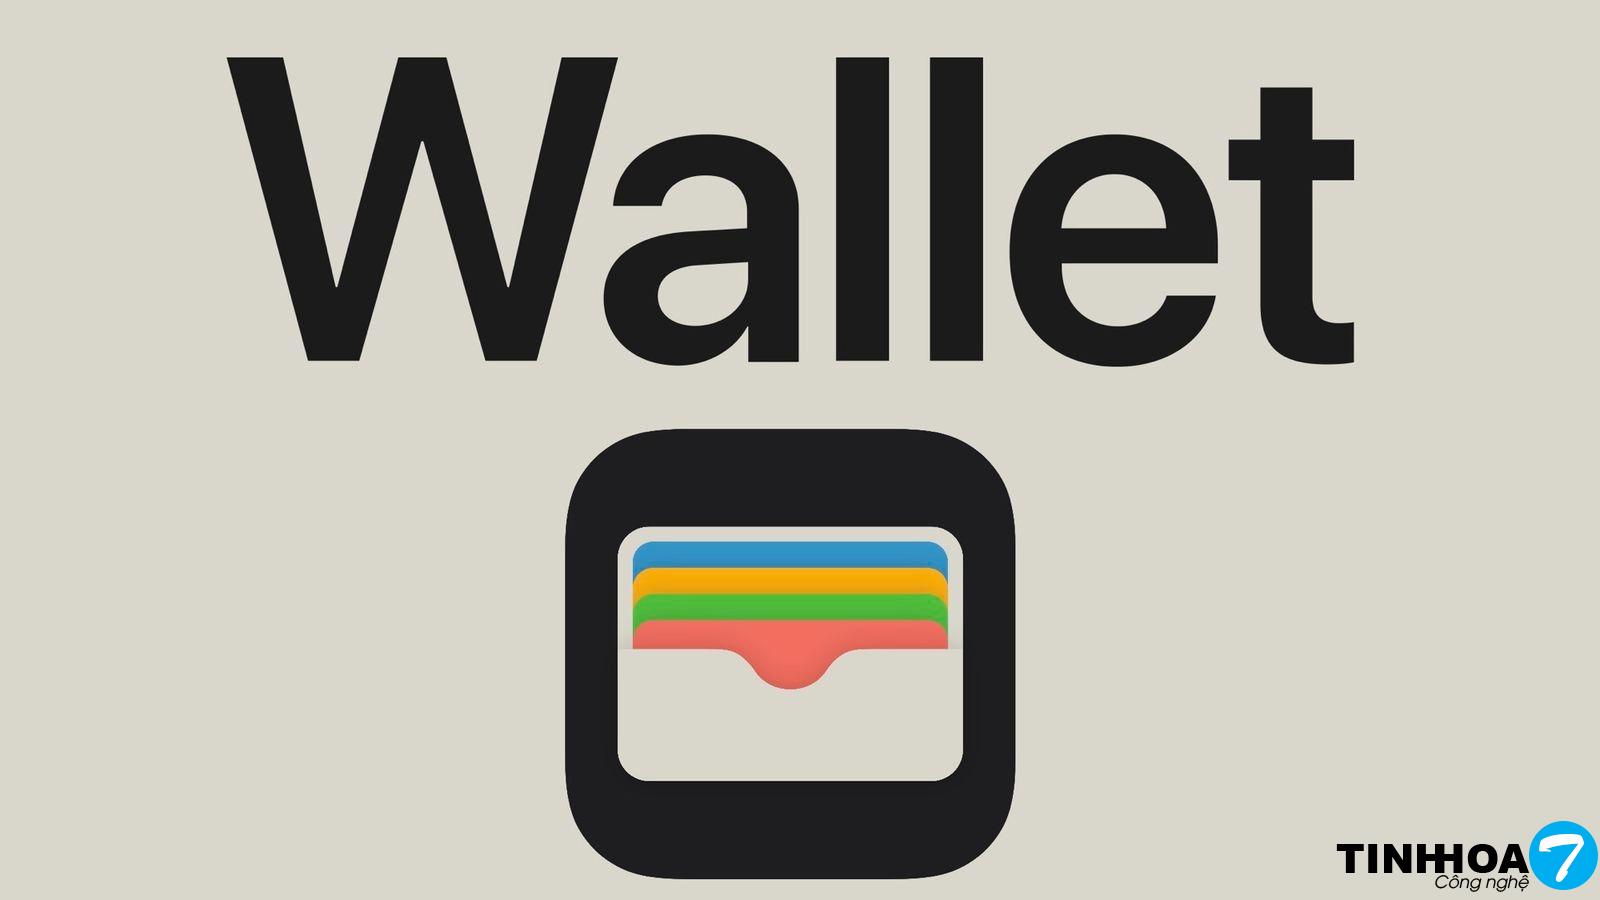 Bắt đầu từ iOS 16.1, người dùng sẽ có thể gỡ bỏ hoàn toàn ứng dụng Wallet | Tinh hoa Công nghệ